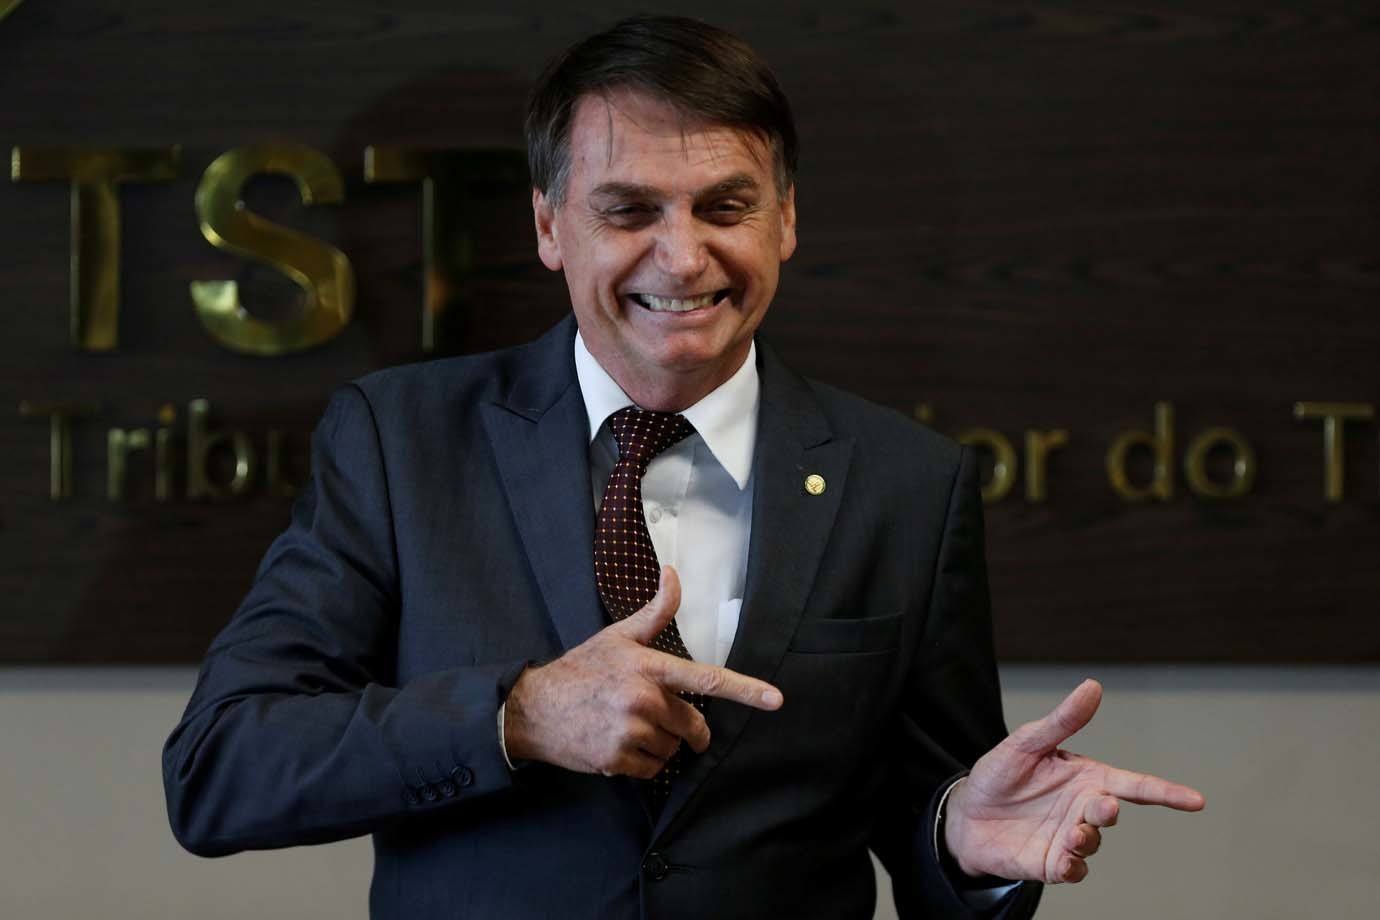 Bolsonaro assina decreto que flexibiliza a posse de armas